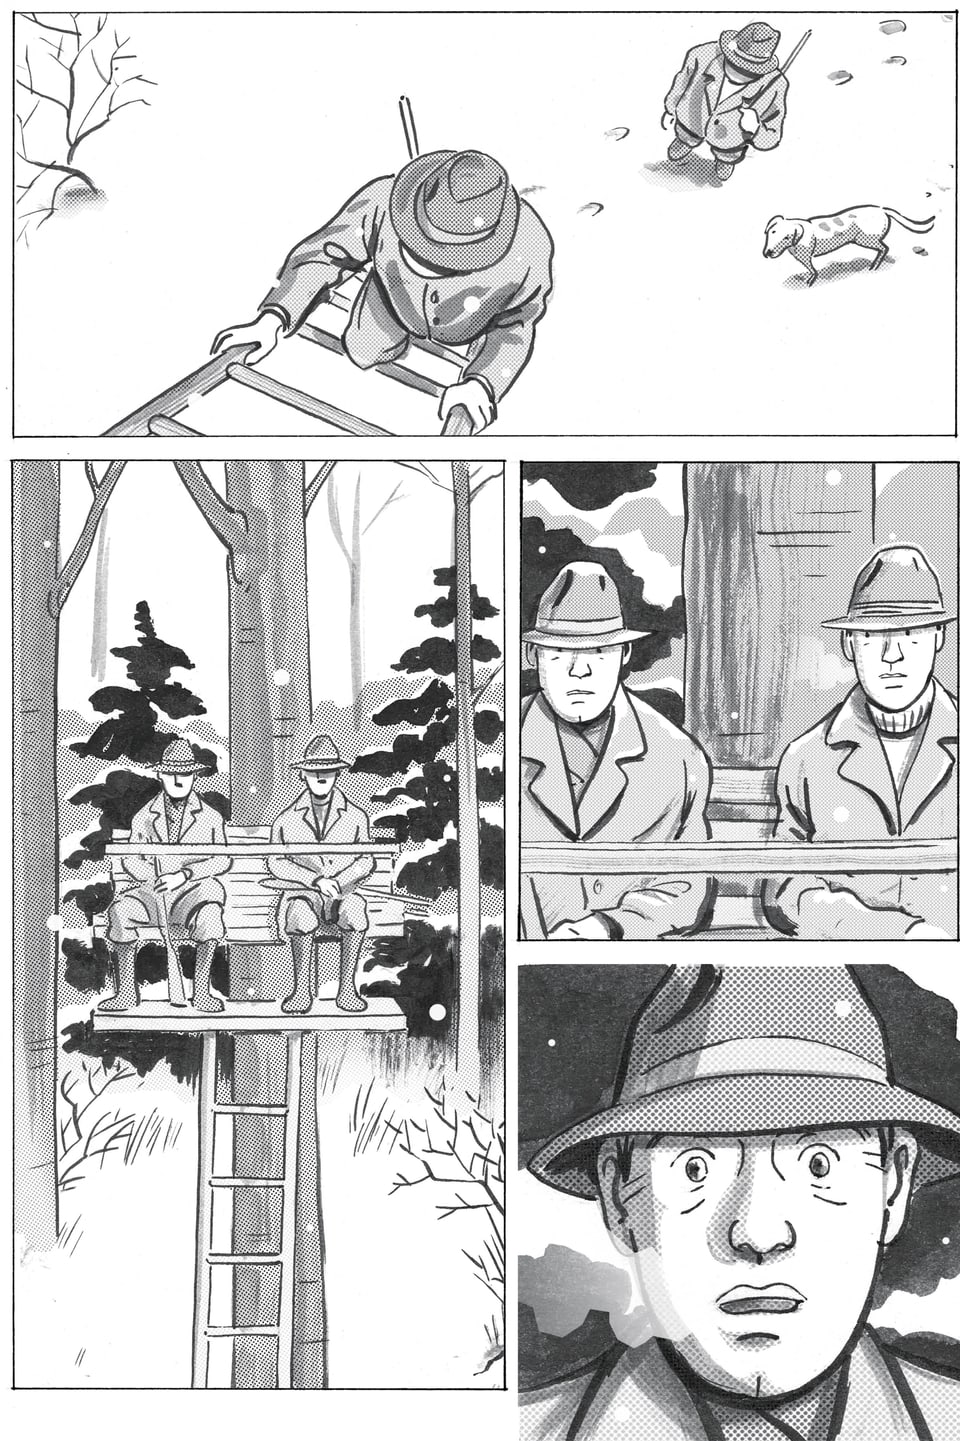 Eine Comicseite mit vier Bildern: Ein Mann in Jagtkleidung steigt eine Leiter hoch, zwei Männer auf einem Hochsitz, einer der Männer reisst die Augen auf.